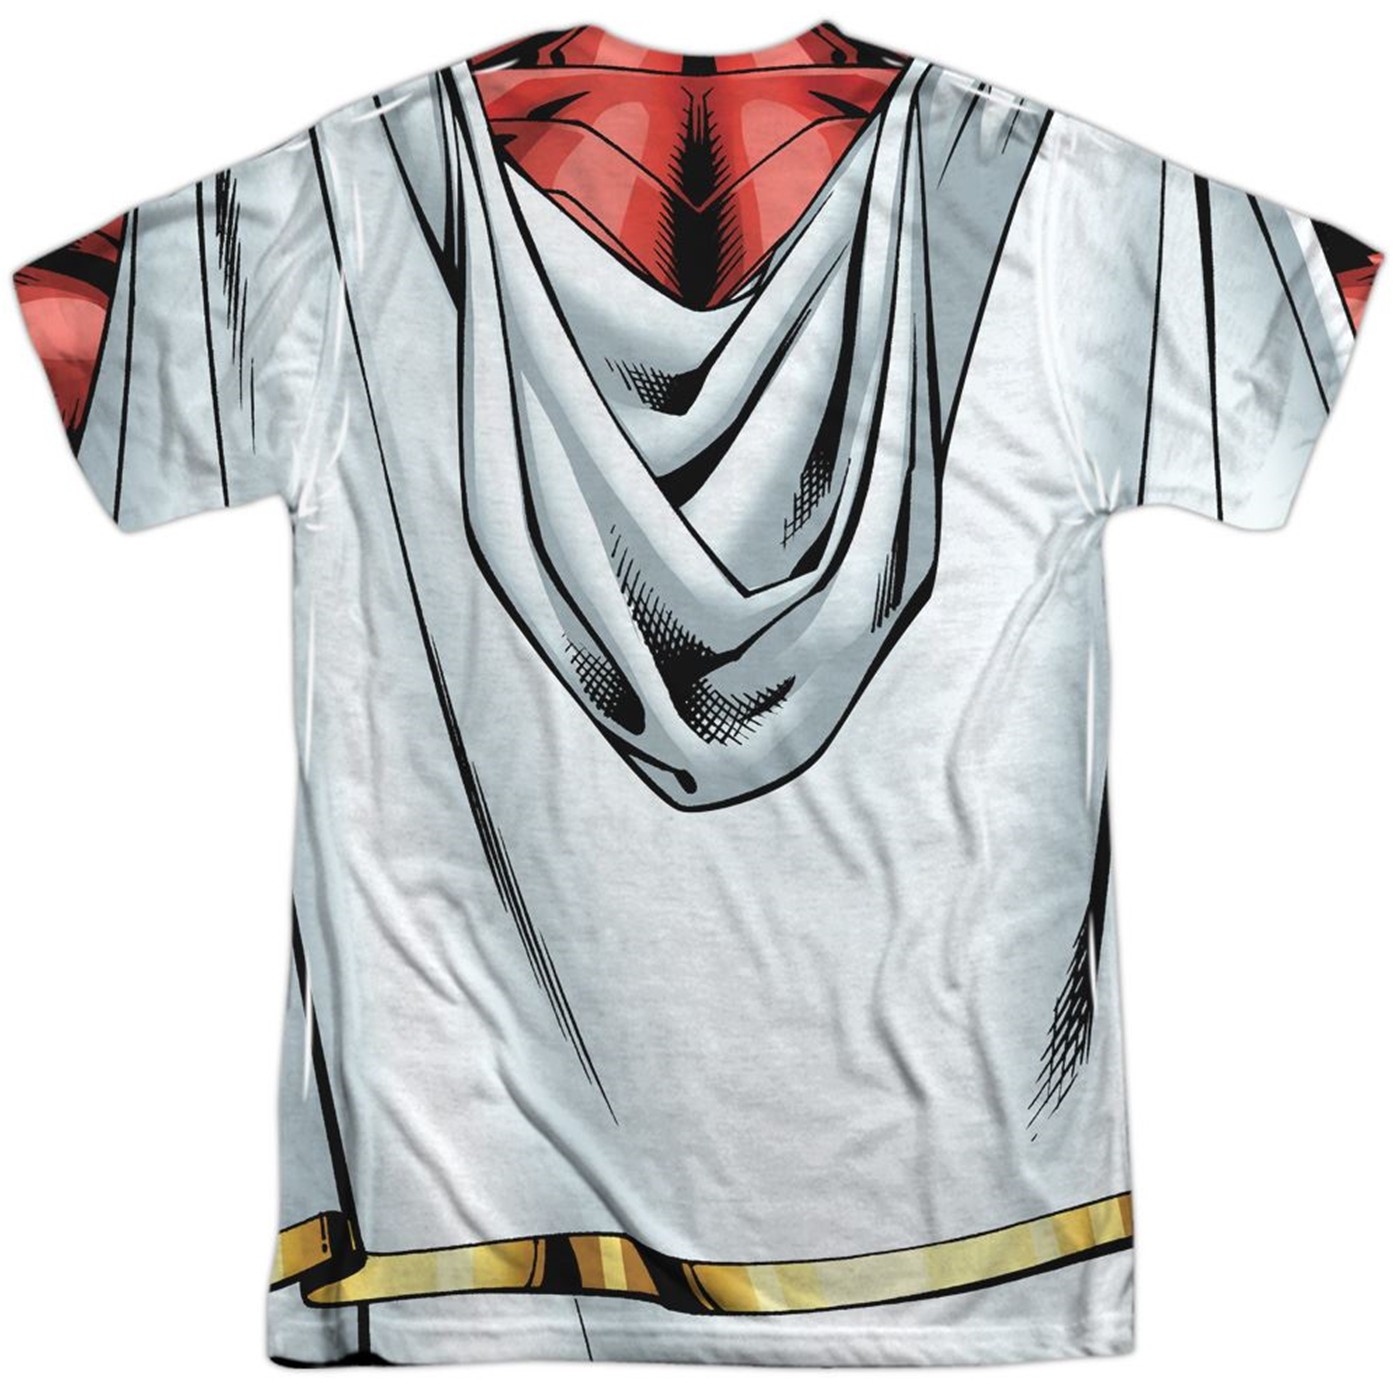 Shazam Sublimated Men's Costume T-Shirt